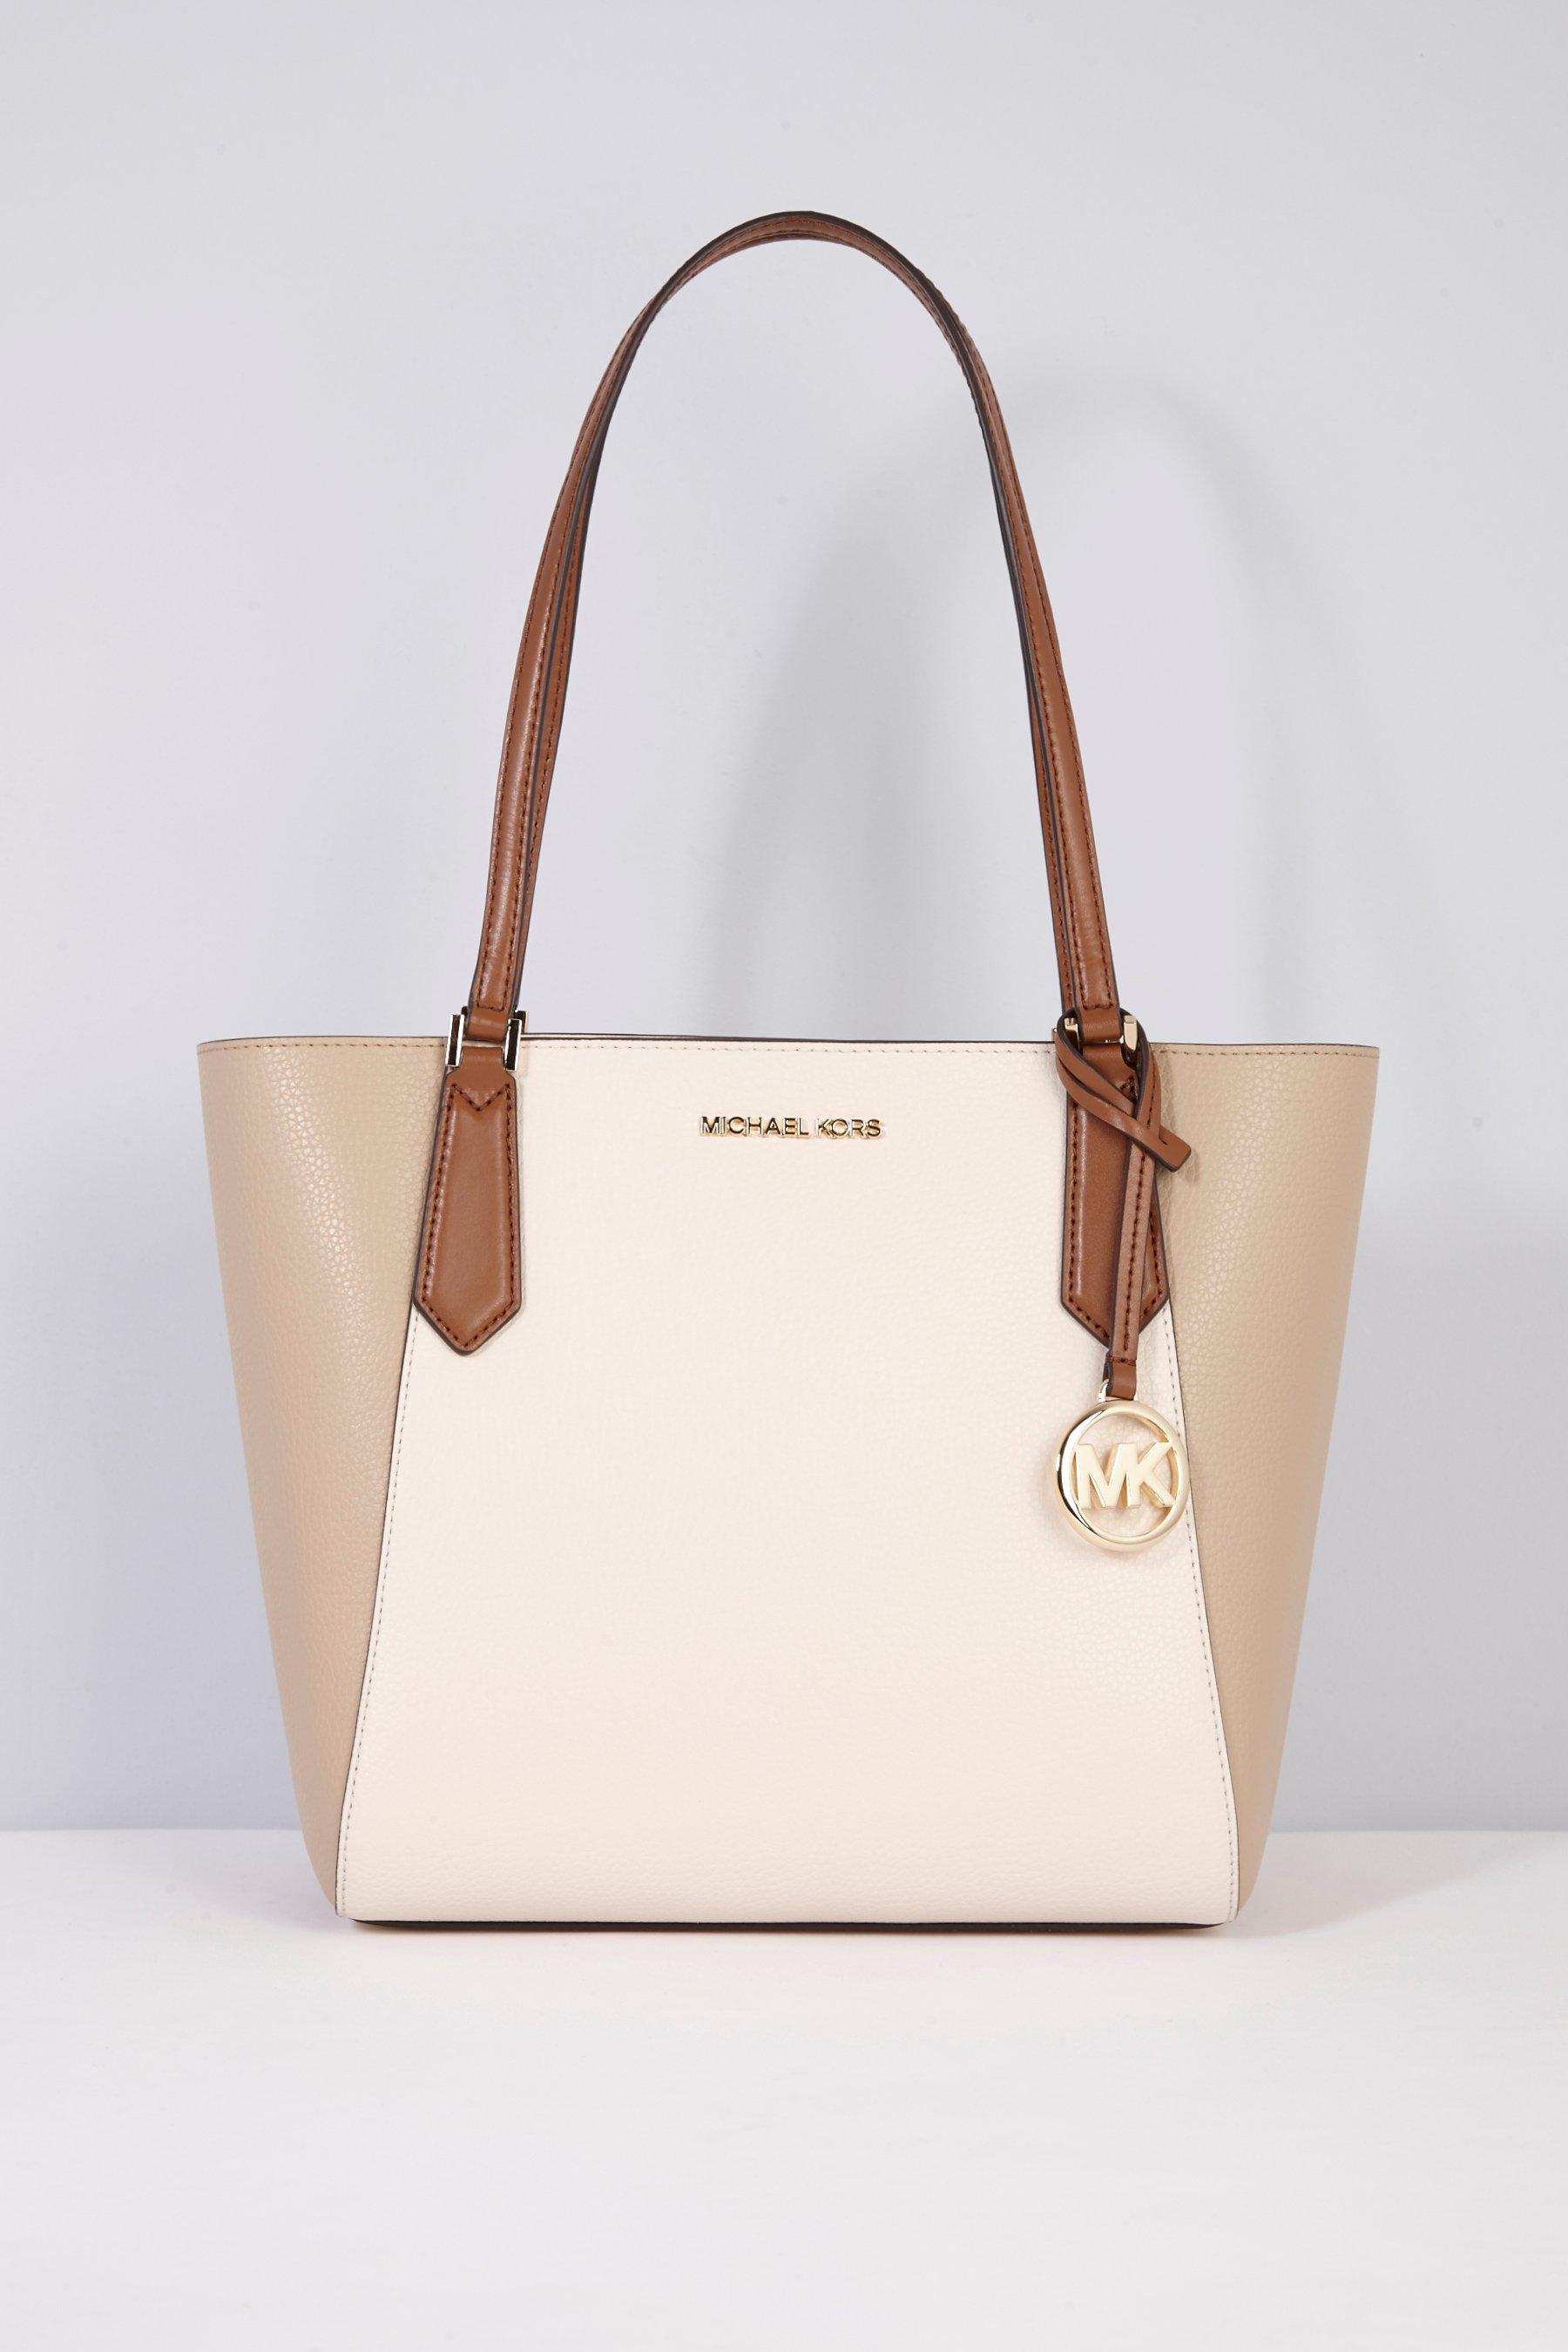 michael kors cream and brown handbag